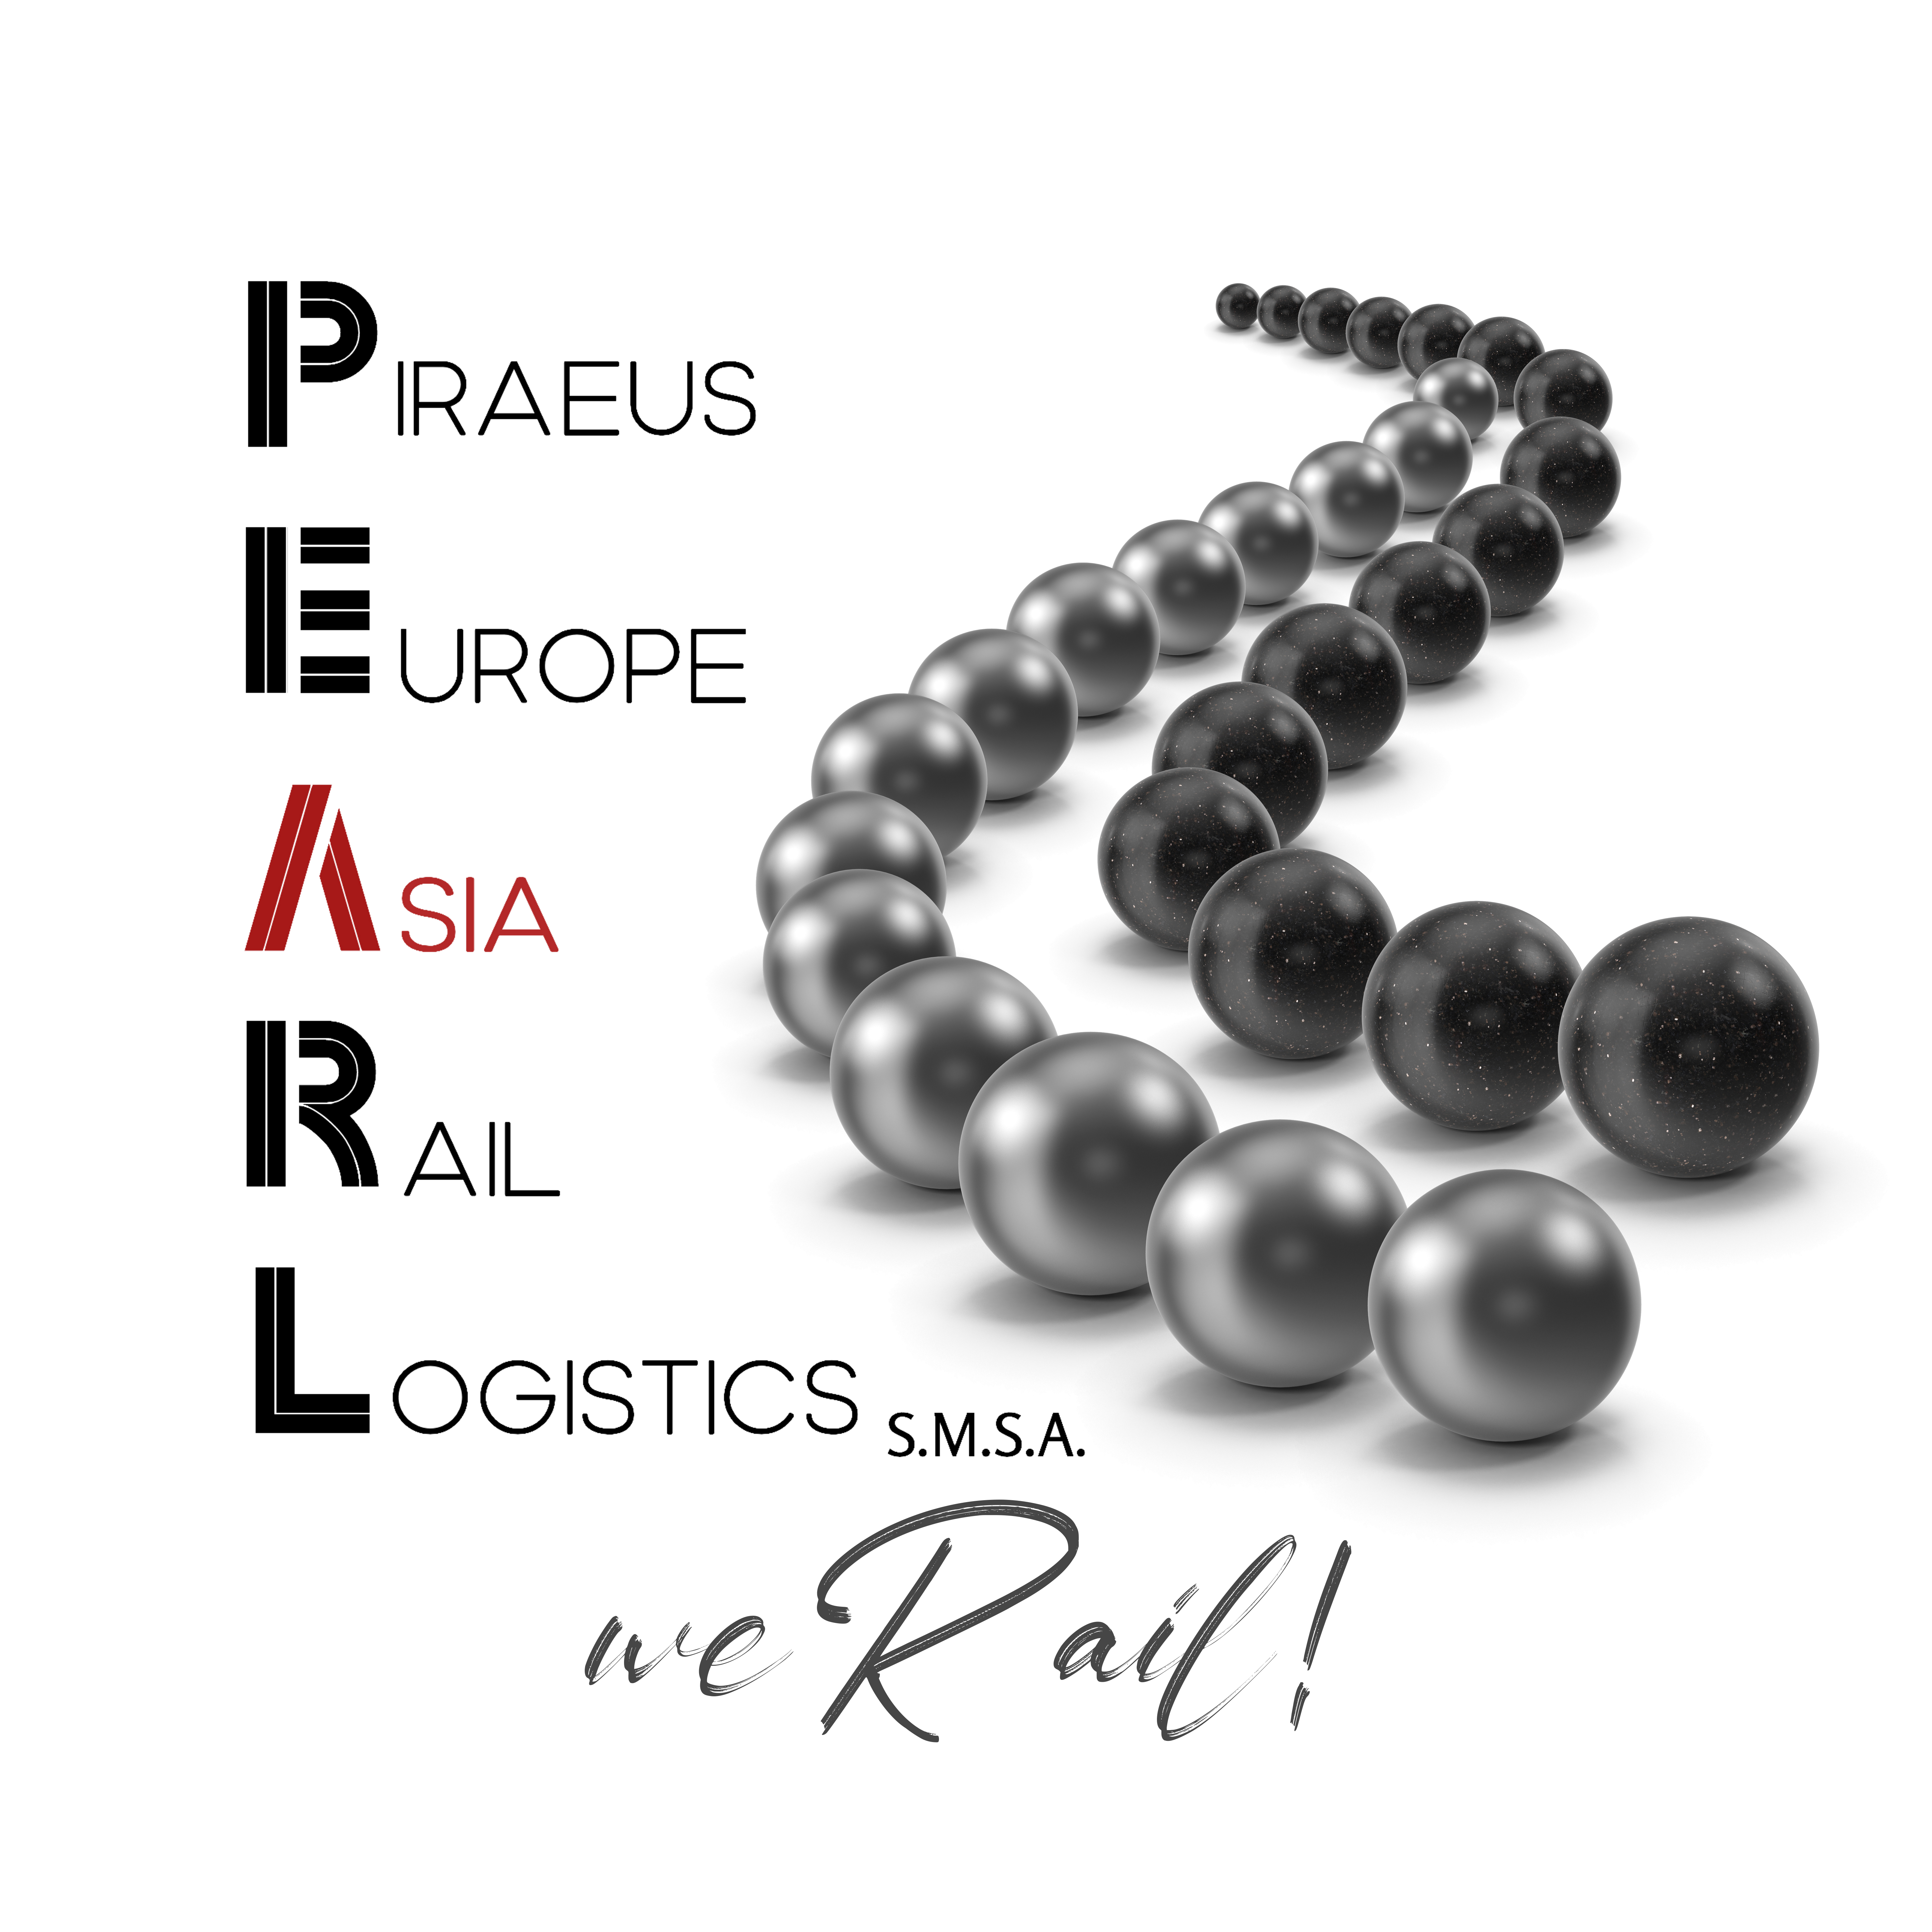 Piraeus Europe Asia Rail Logistics S.M.S.A.